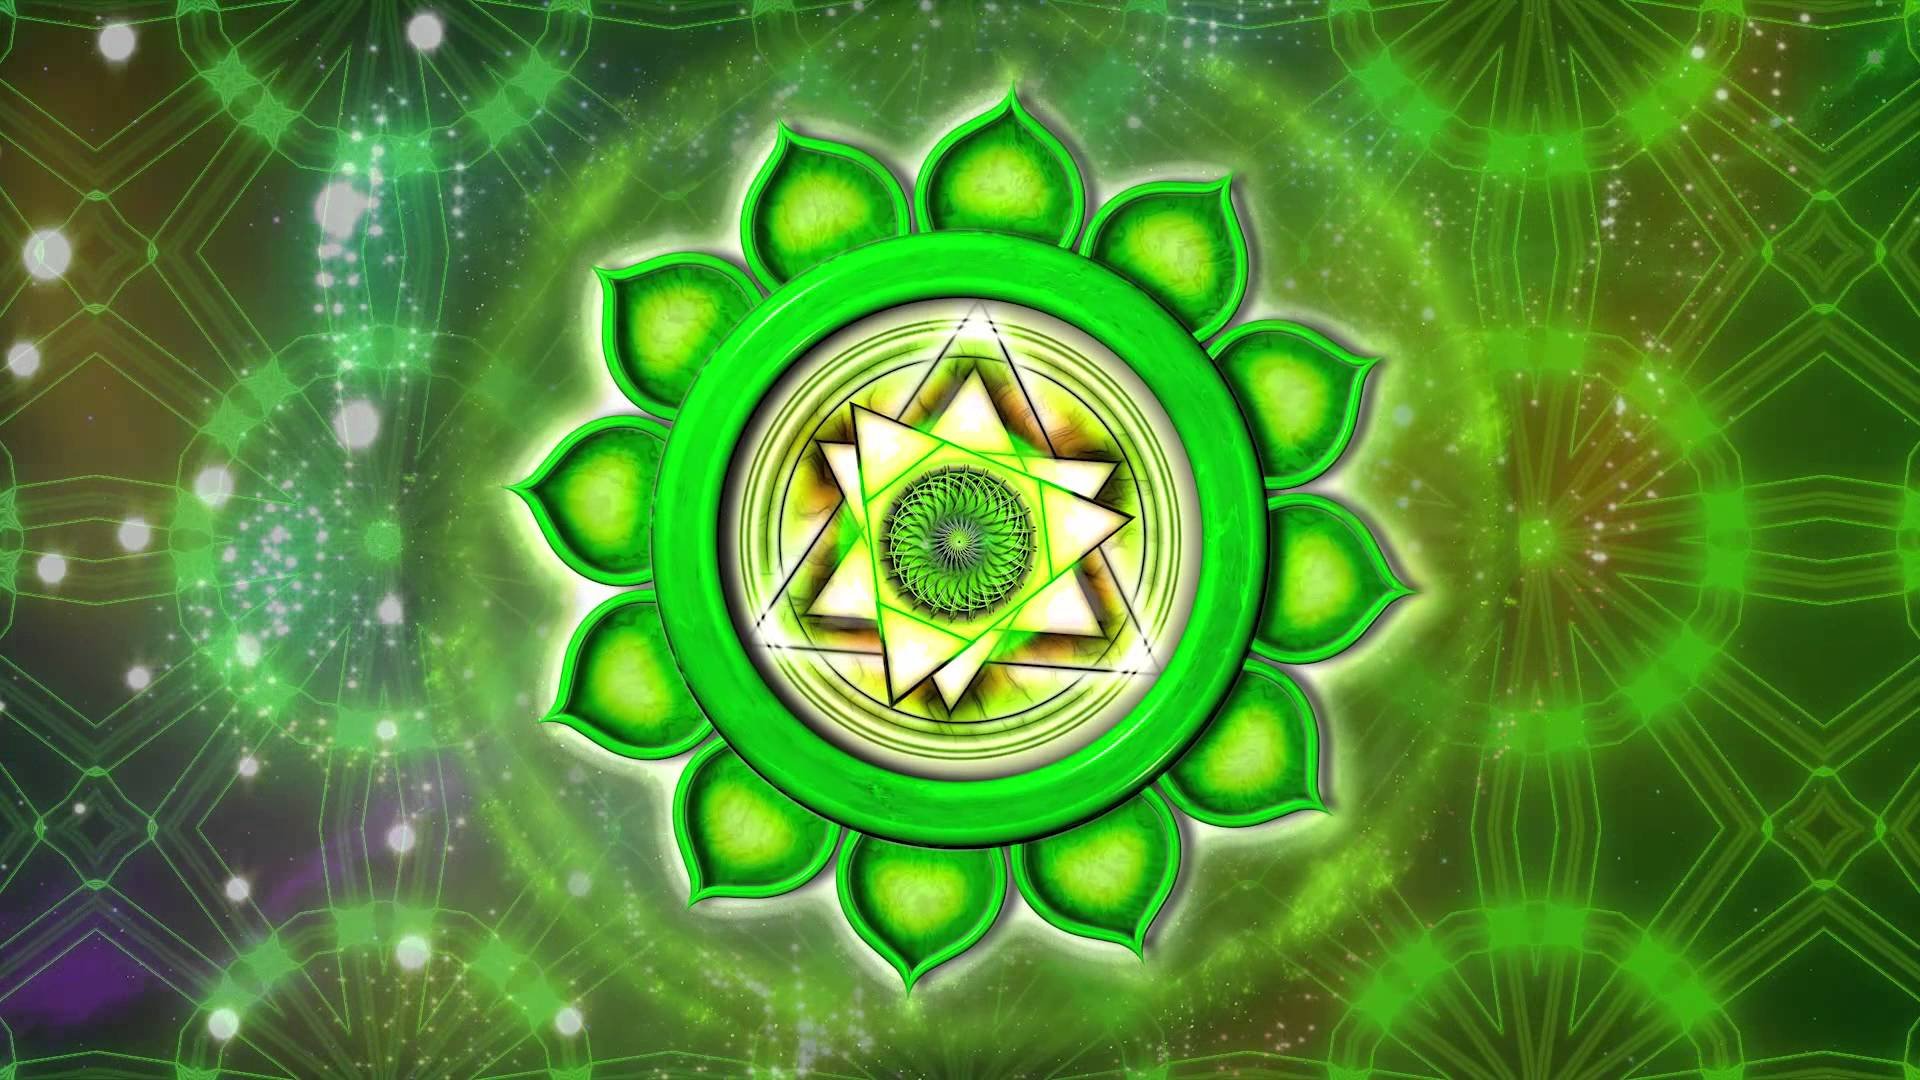 Цвет притягивающий удачу. Четвертая сердечная чакра Анахата. Анахата чакра Янтра. Мандала Анахата чакра. Зеленая чакра Анахата.